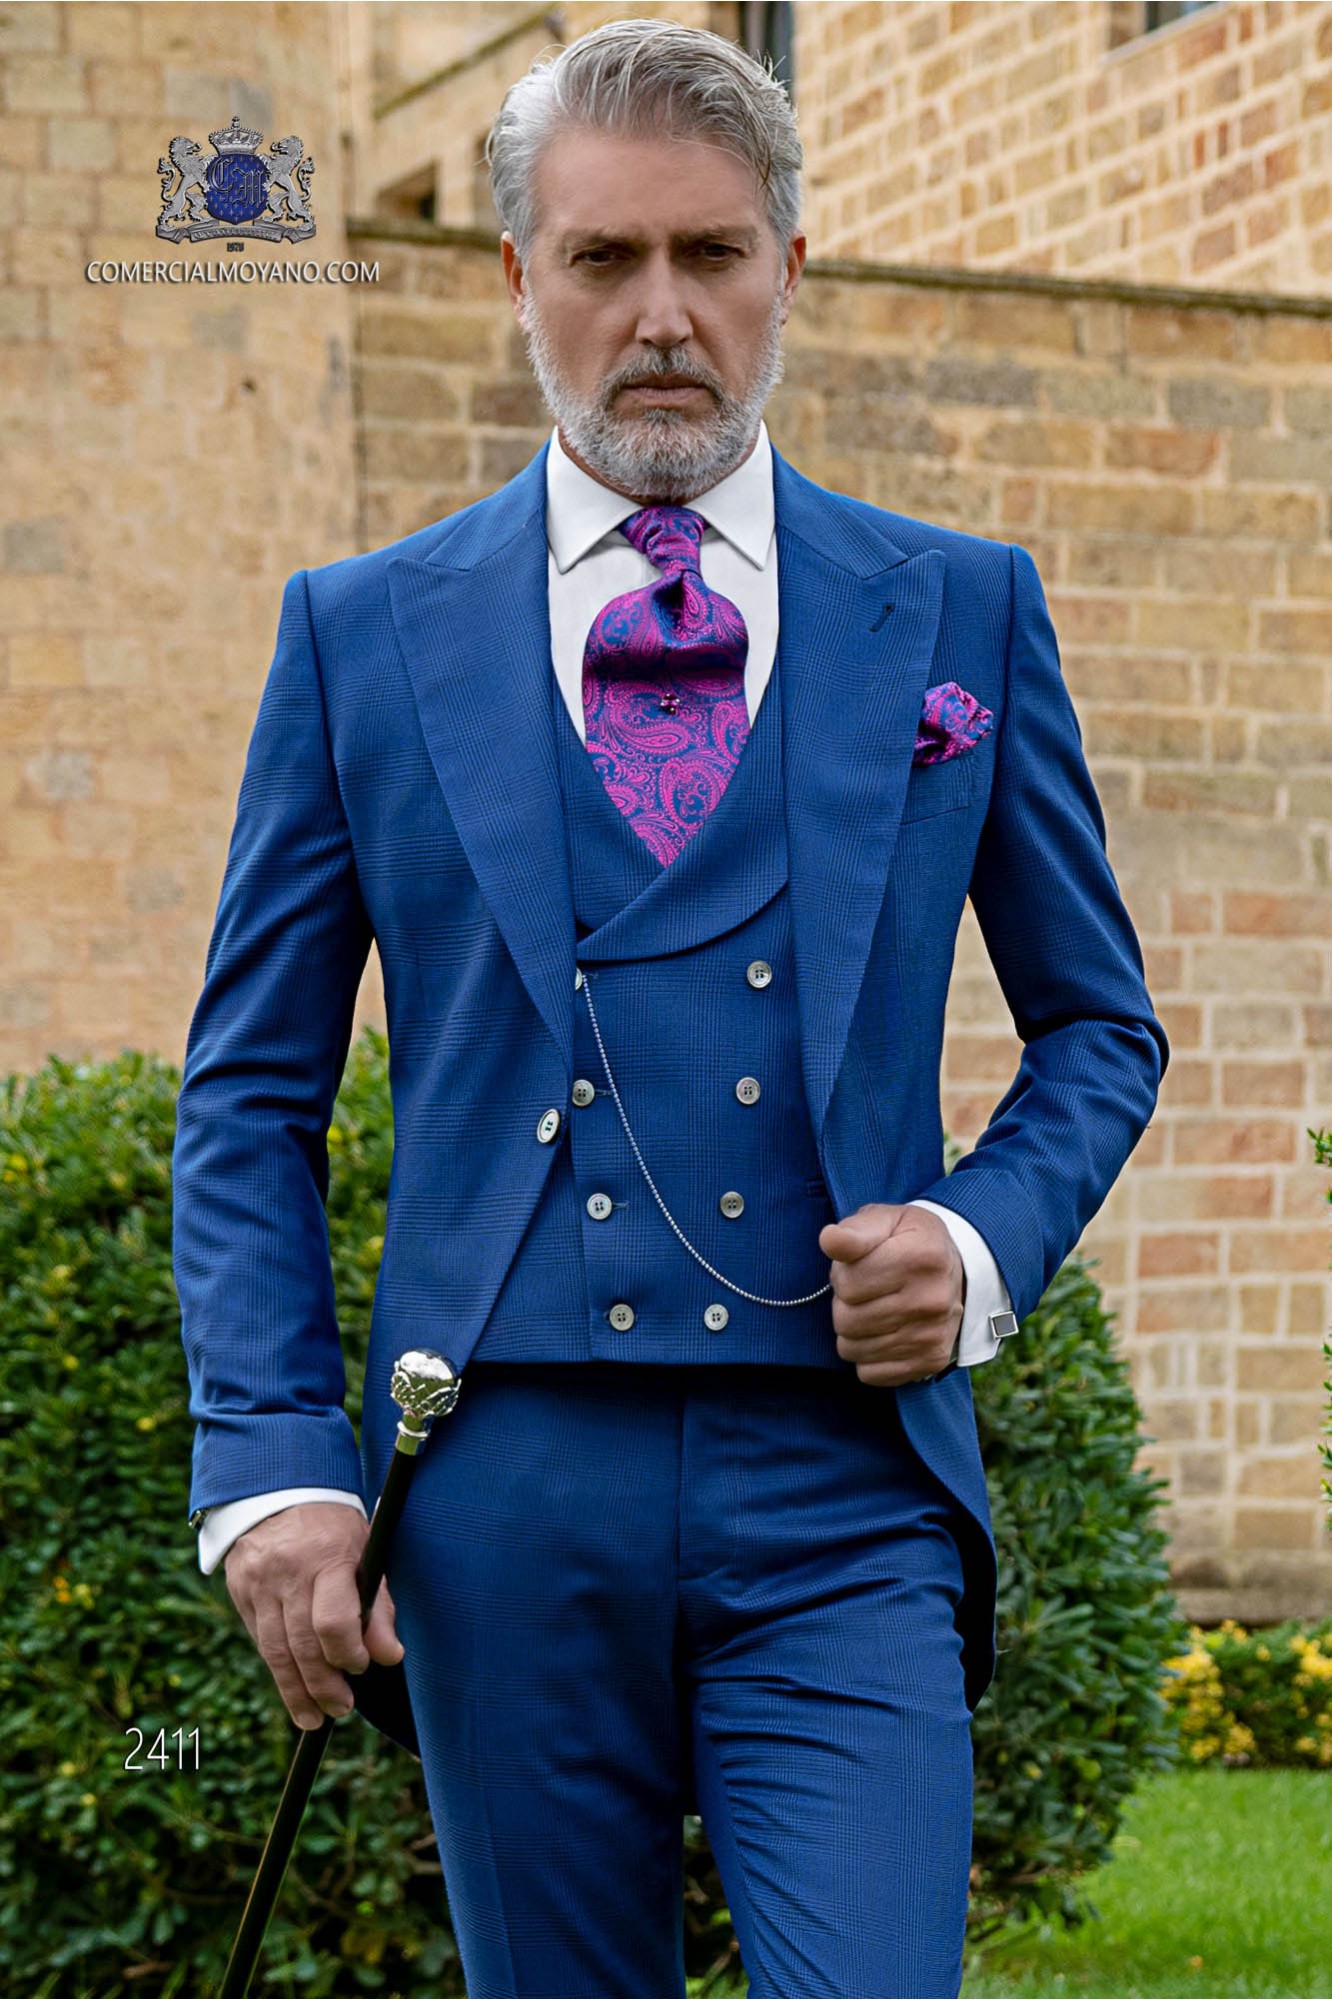 Chaqué de novio príncipe de gales azul royal modelo: 2411 Mario Moyano colección Gentleman